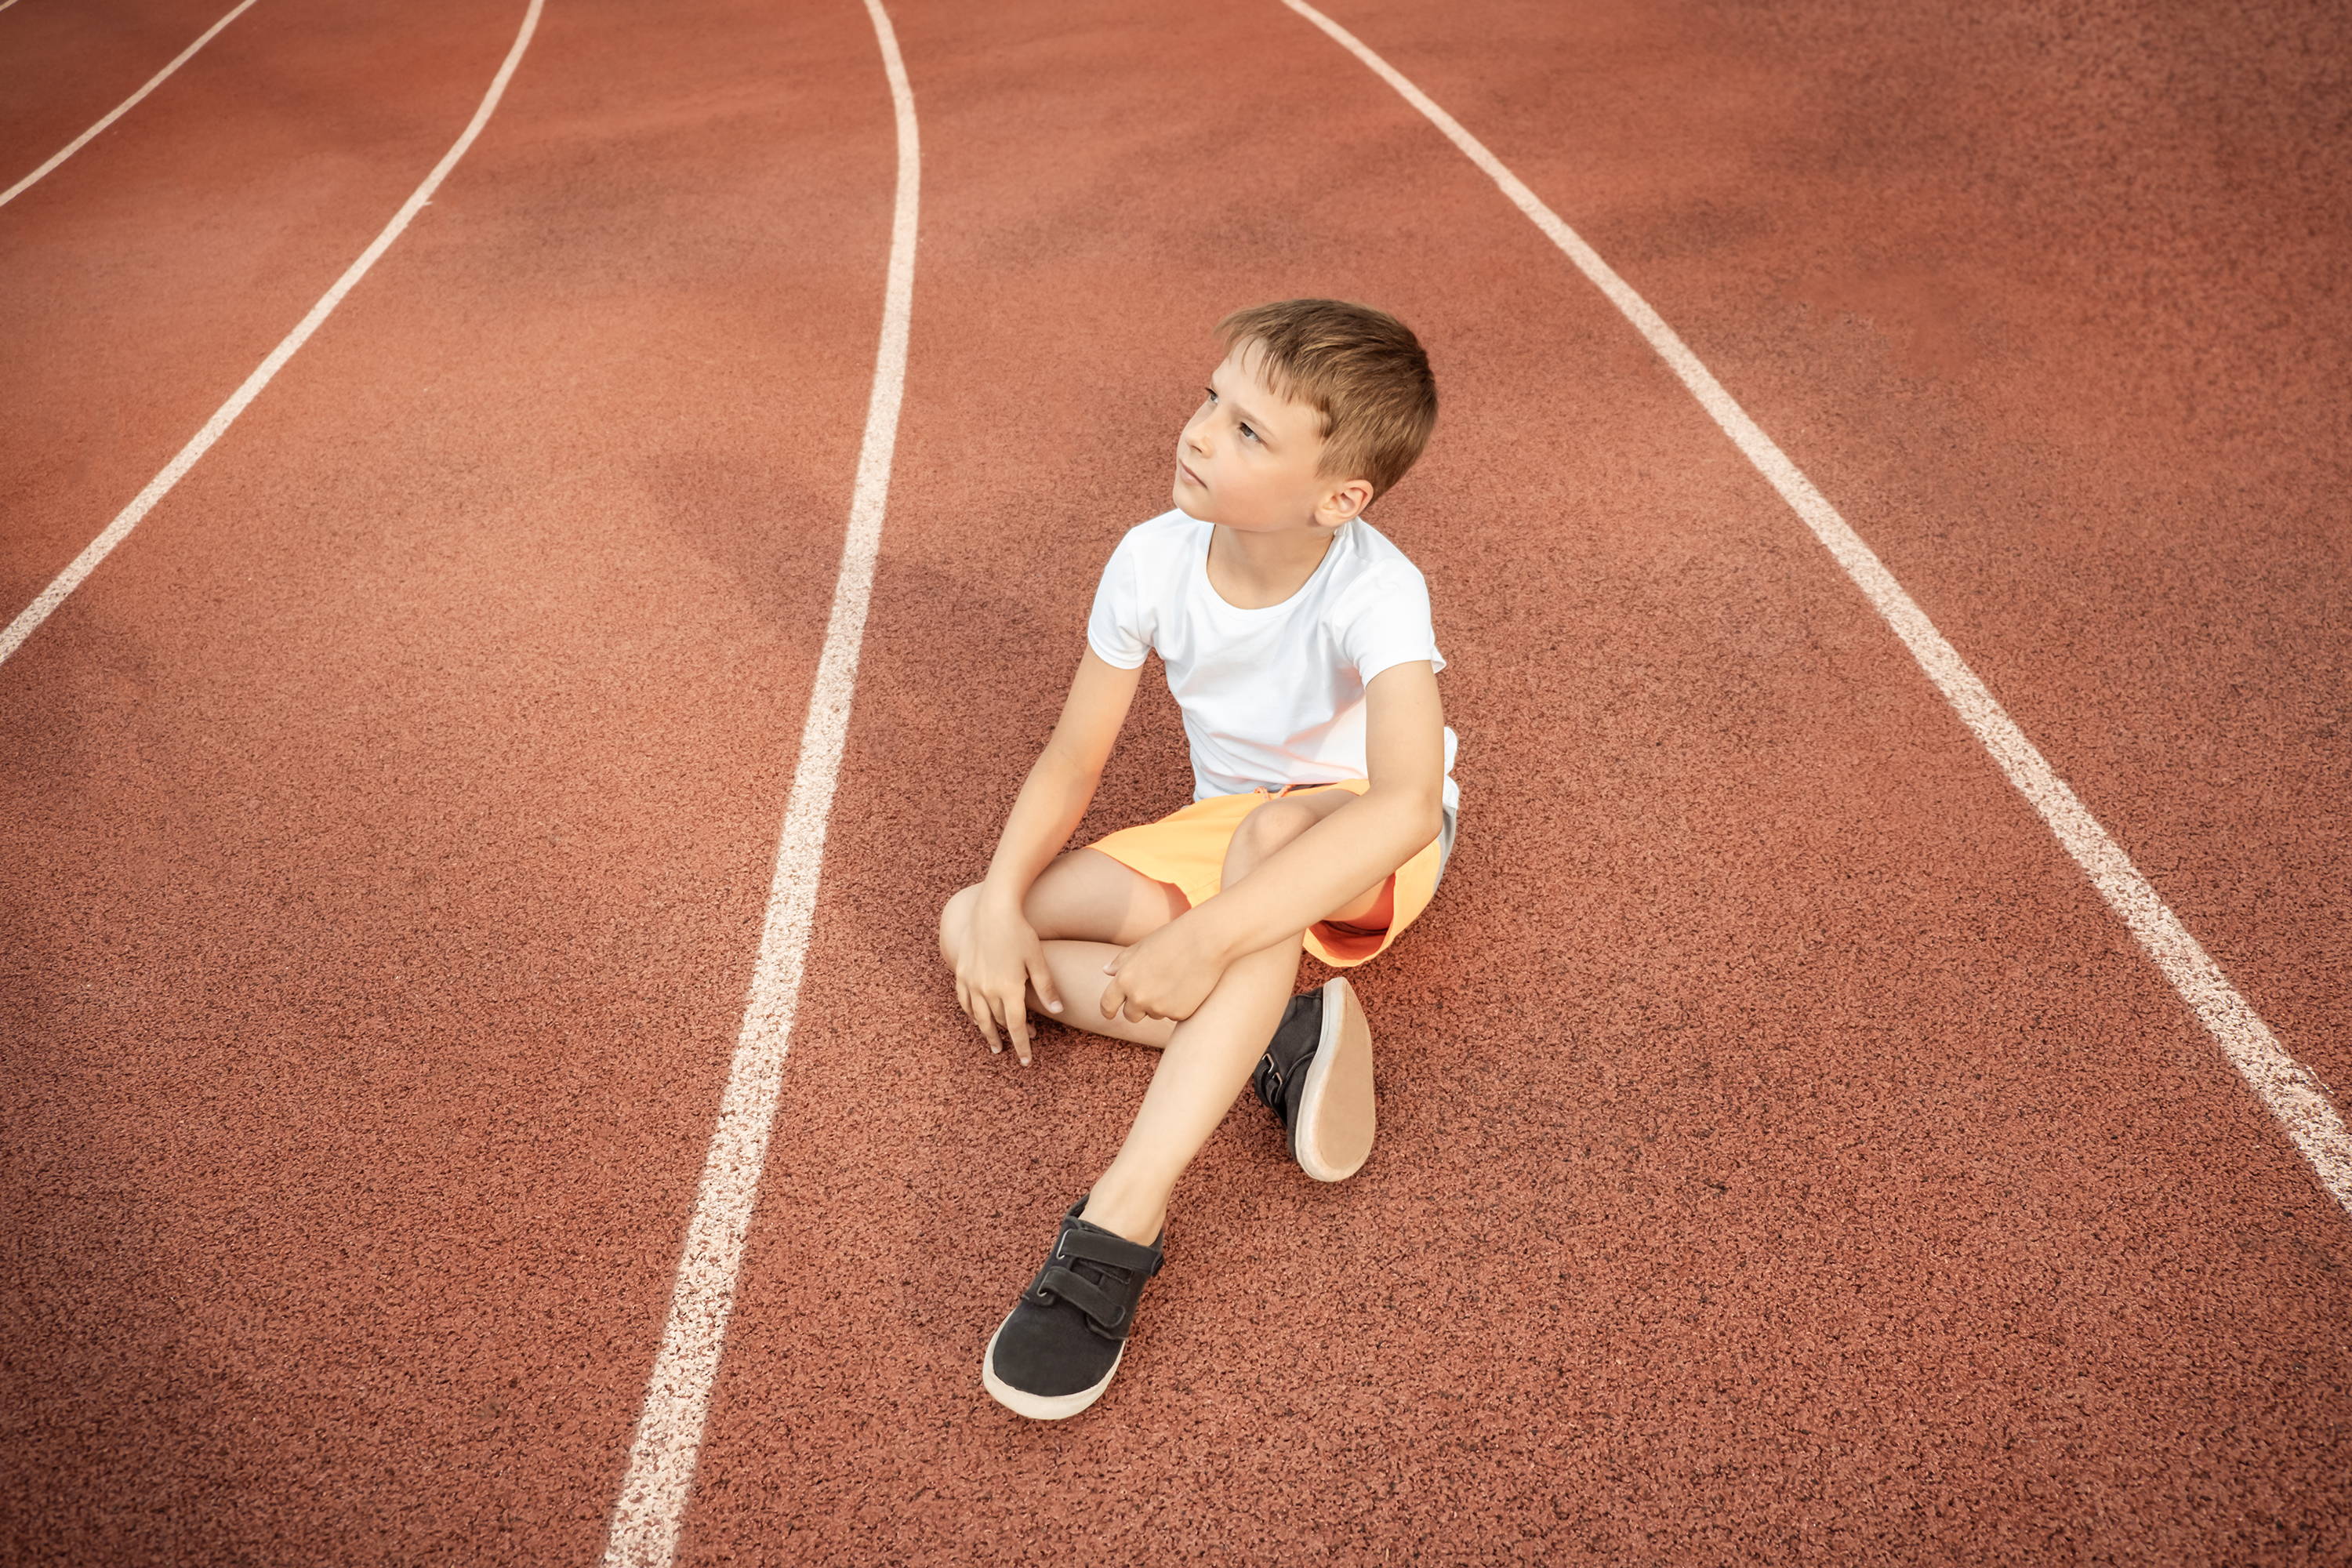 Jongetje dat midden op een atletiekbaan zit – lichamelijke beweging kan astma uitlokken; misschien moest hij stoppen of kan hij niet meedoen